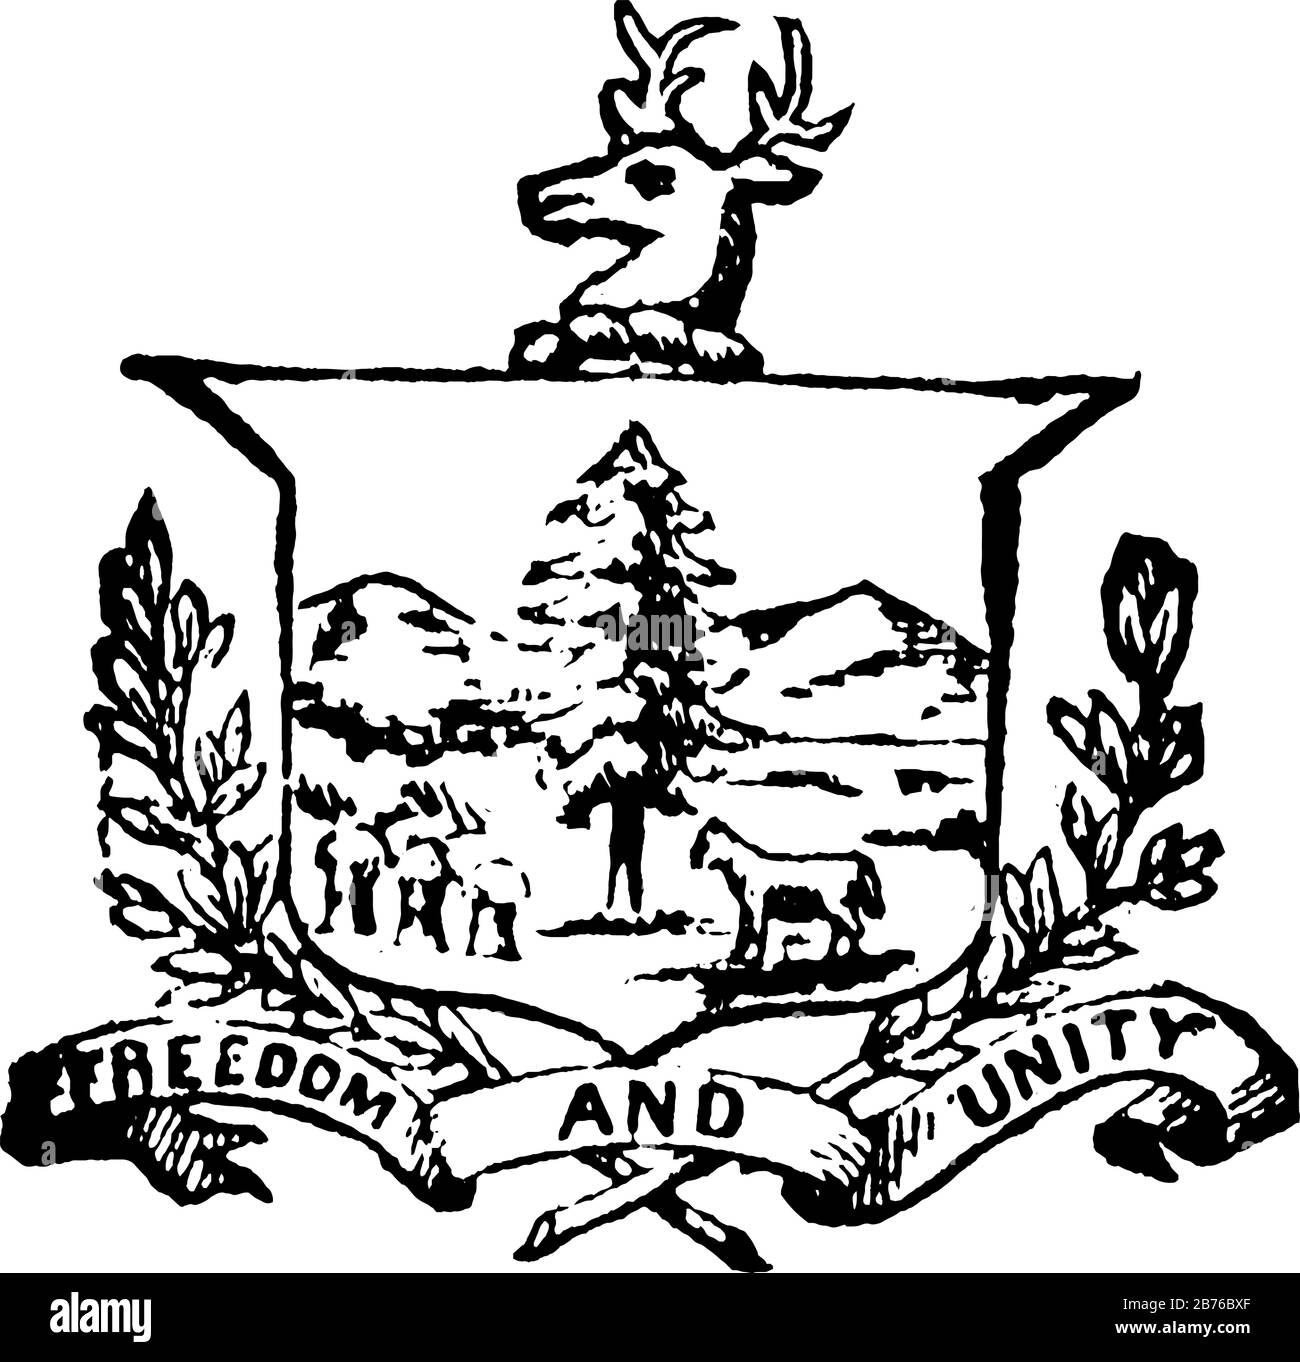 Siegel des Staates Vermont, 1890, diese Robbenhöhlen, Kiefer, Kuh, Buckkopf oben, sie hat auch Berge im Hintergrund, FREIHEIT UND EINHEIT ist w Stock Vektor